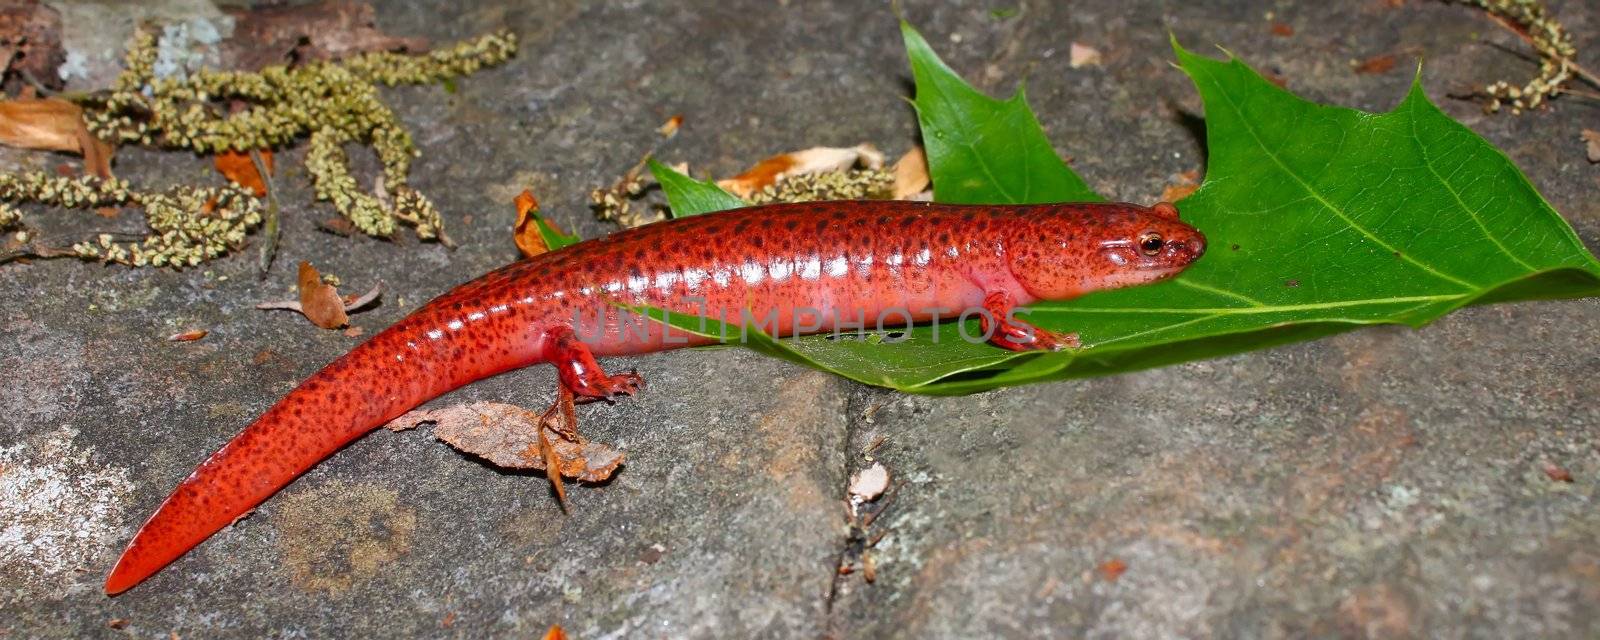 A Red Salamander (Pseudotriton ruber) at Monte Sano State Park - AlabamaA Red Salamander (Pseudotriton ruber) at Monte Sano State Park - Alabama.